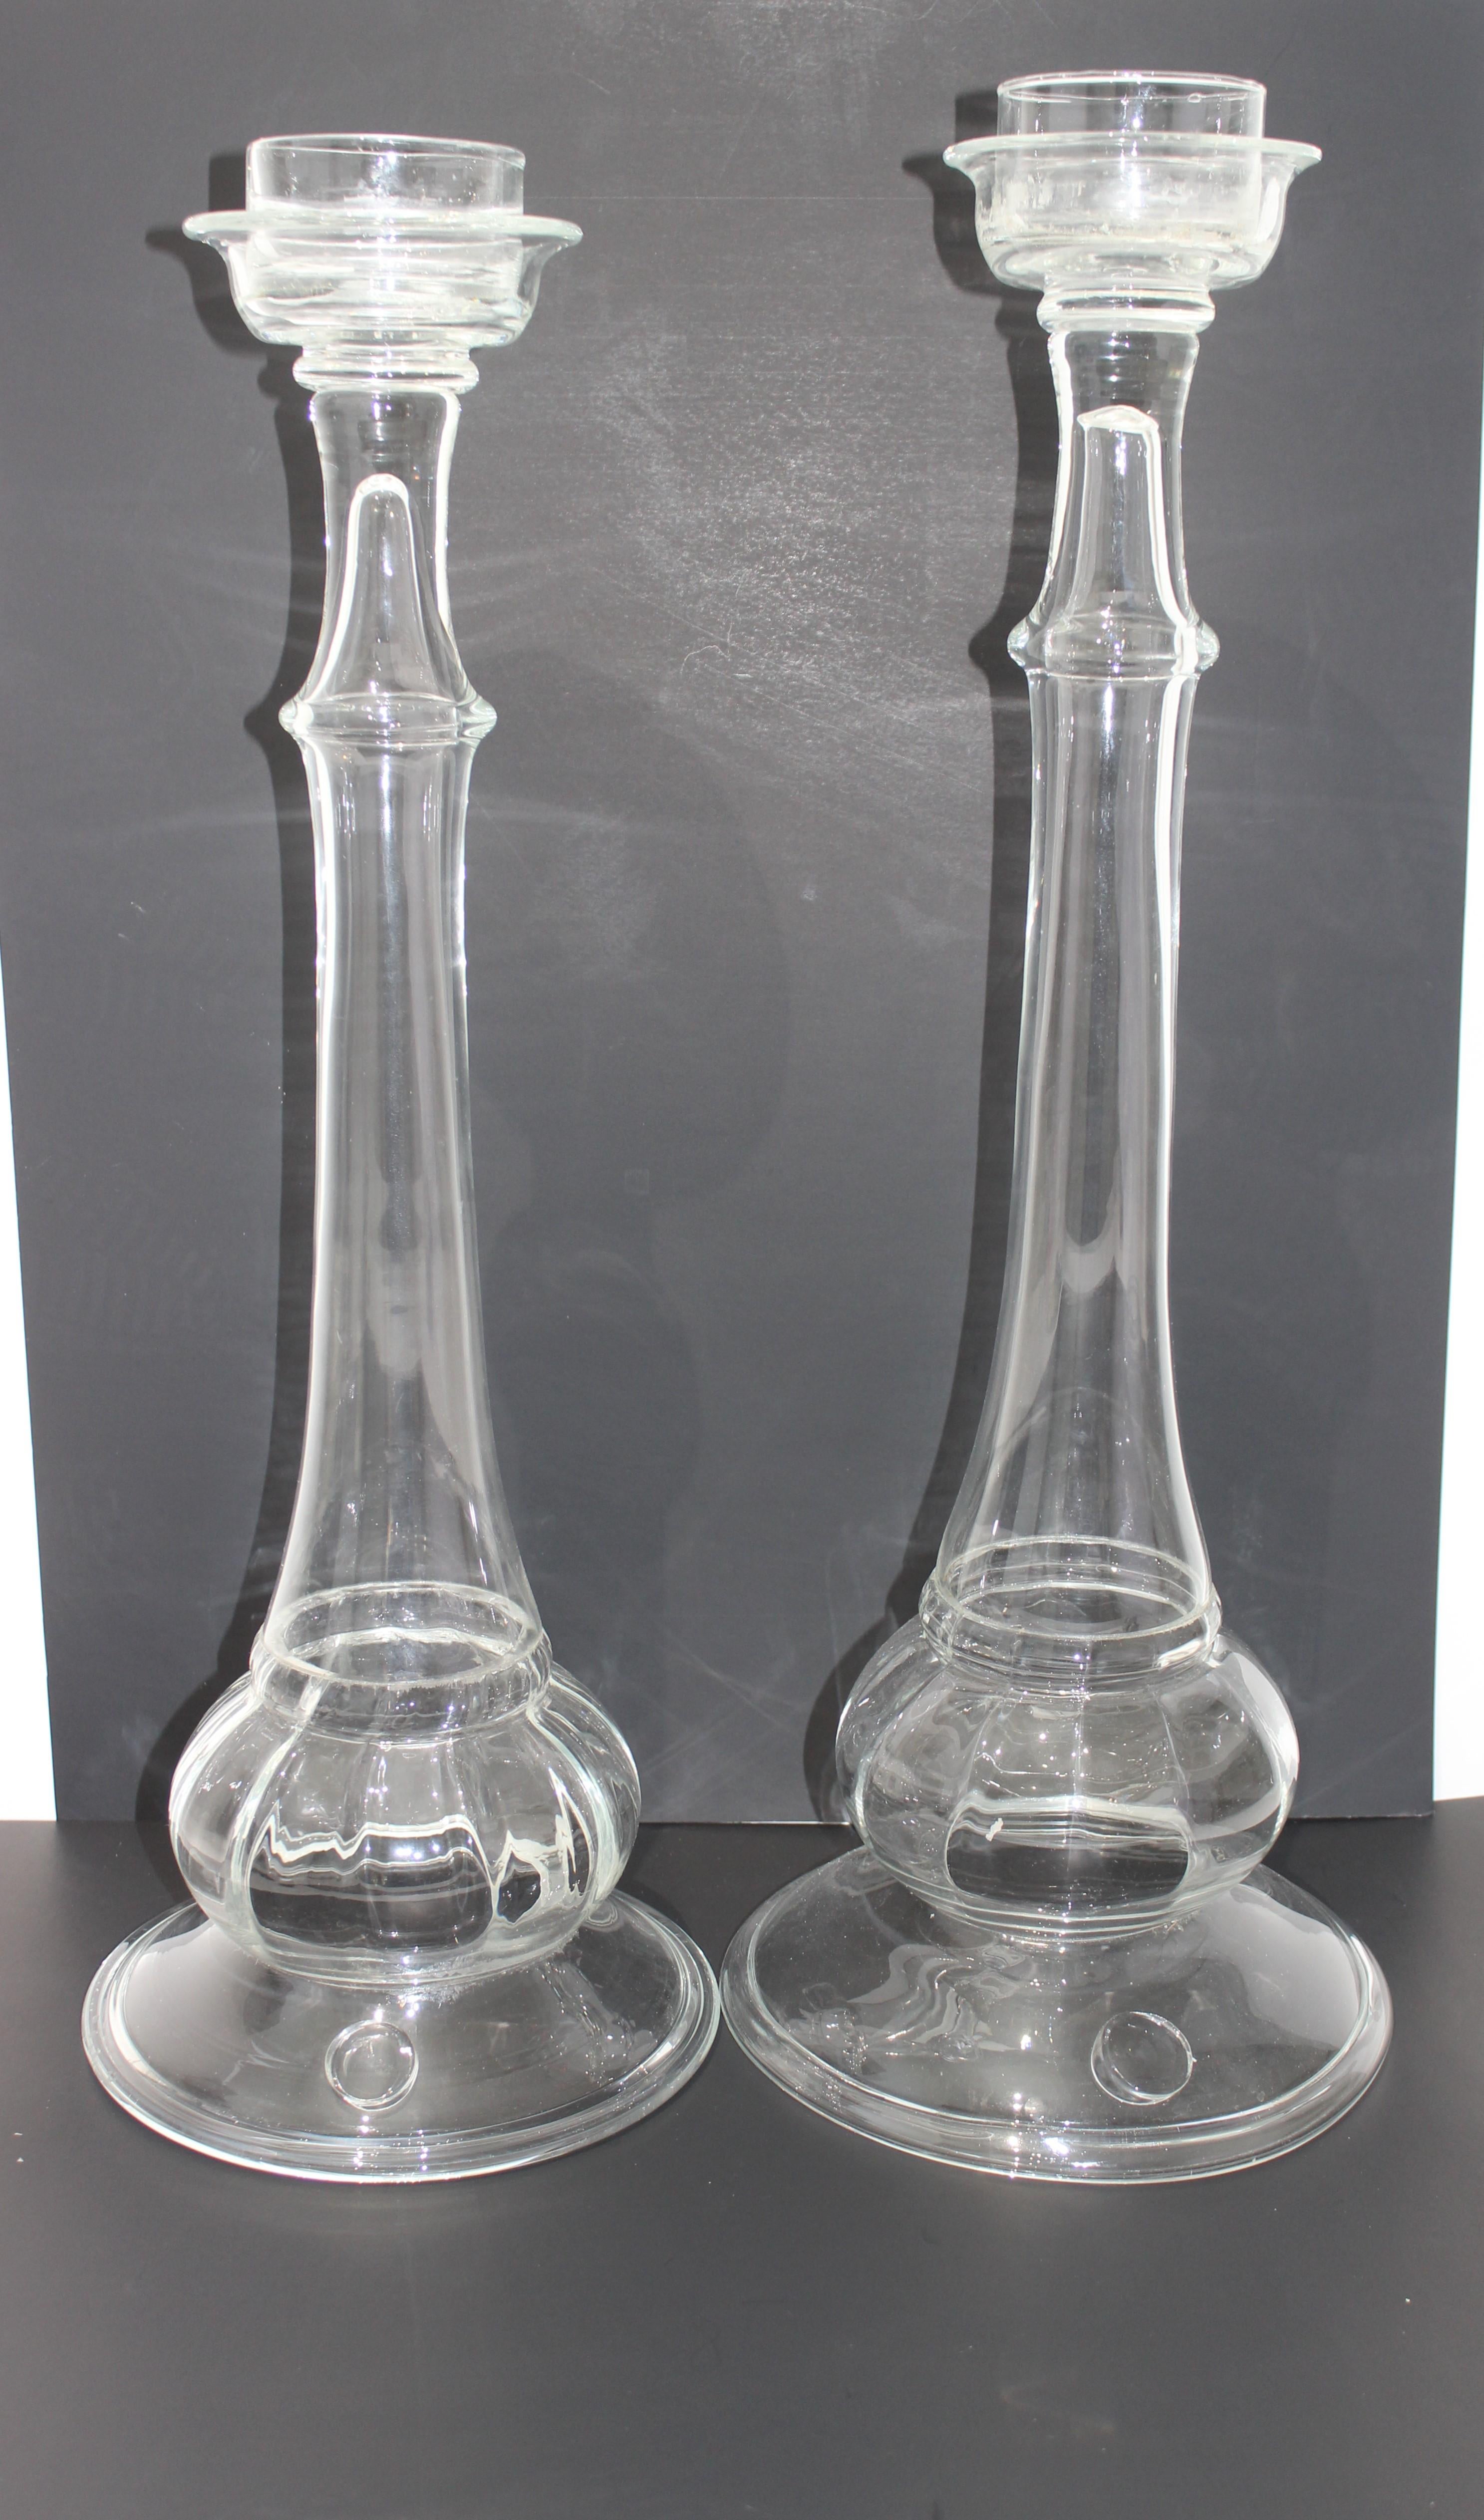 Cet ensemble élégant de deux chandeliers en verre soufflé à la main date des années 1970-1980 et a été créé par Blenko glass.

Remarque : les dimensions sont de 26 pouces de hauteur x 9,63 pouces de diamètre.
 Les dimensions sont de 25